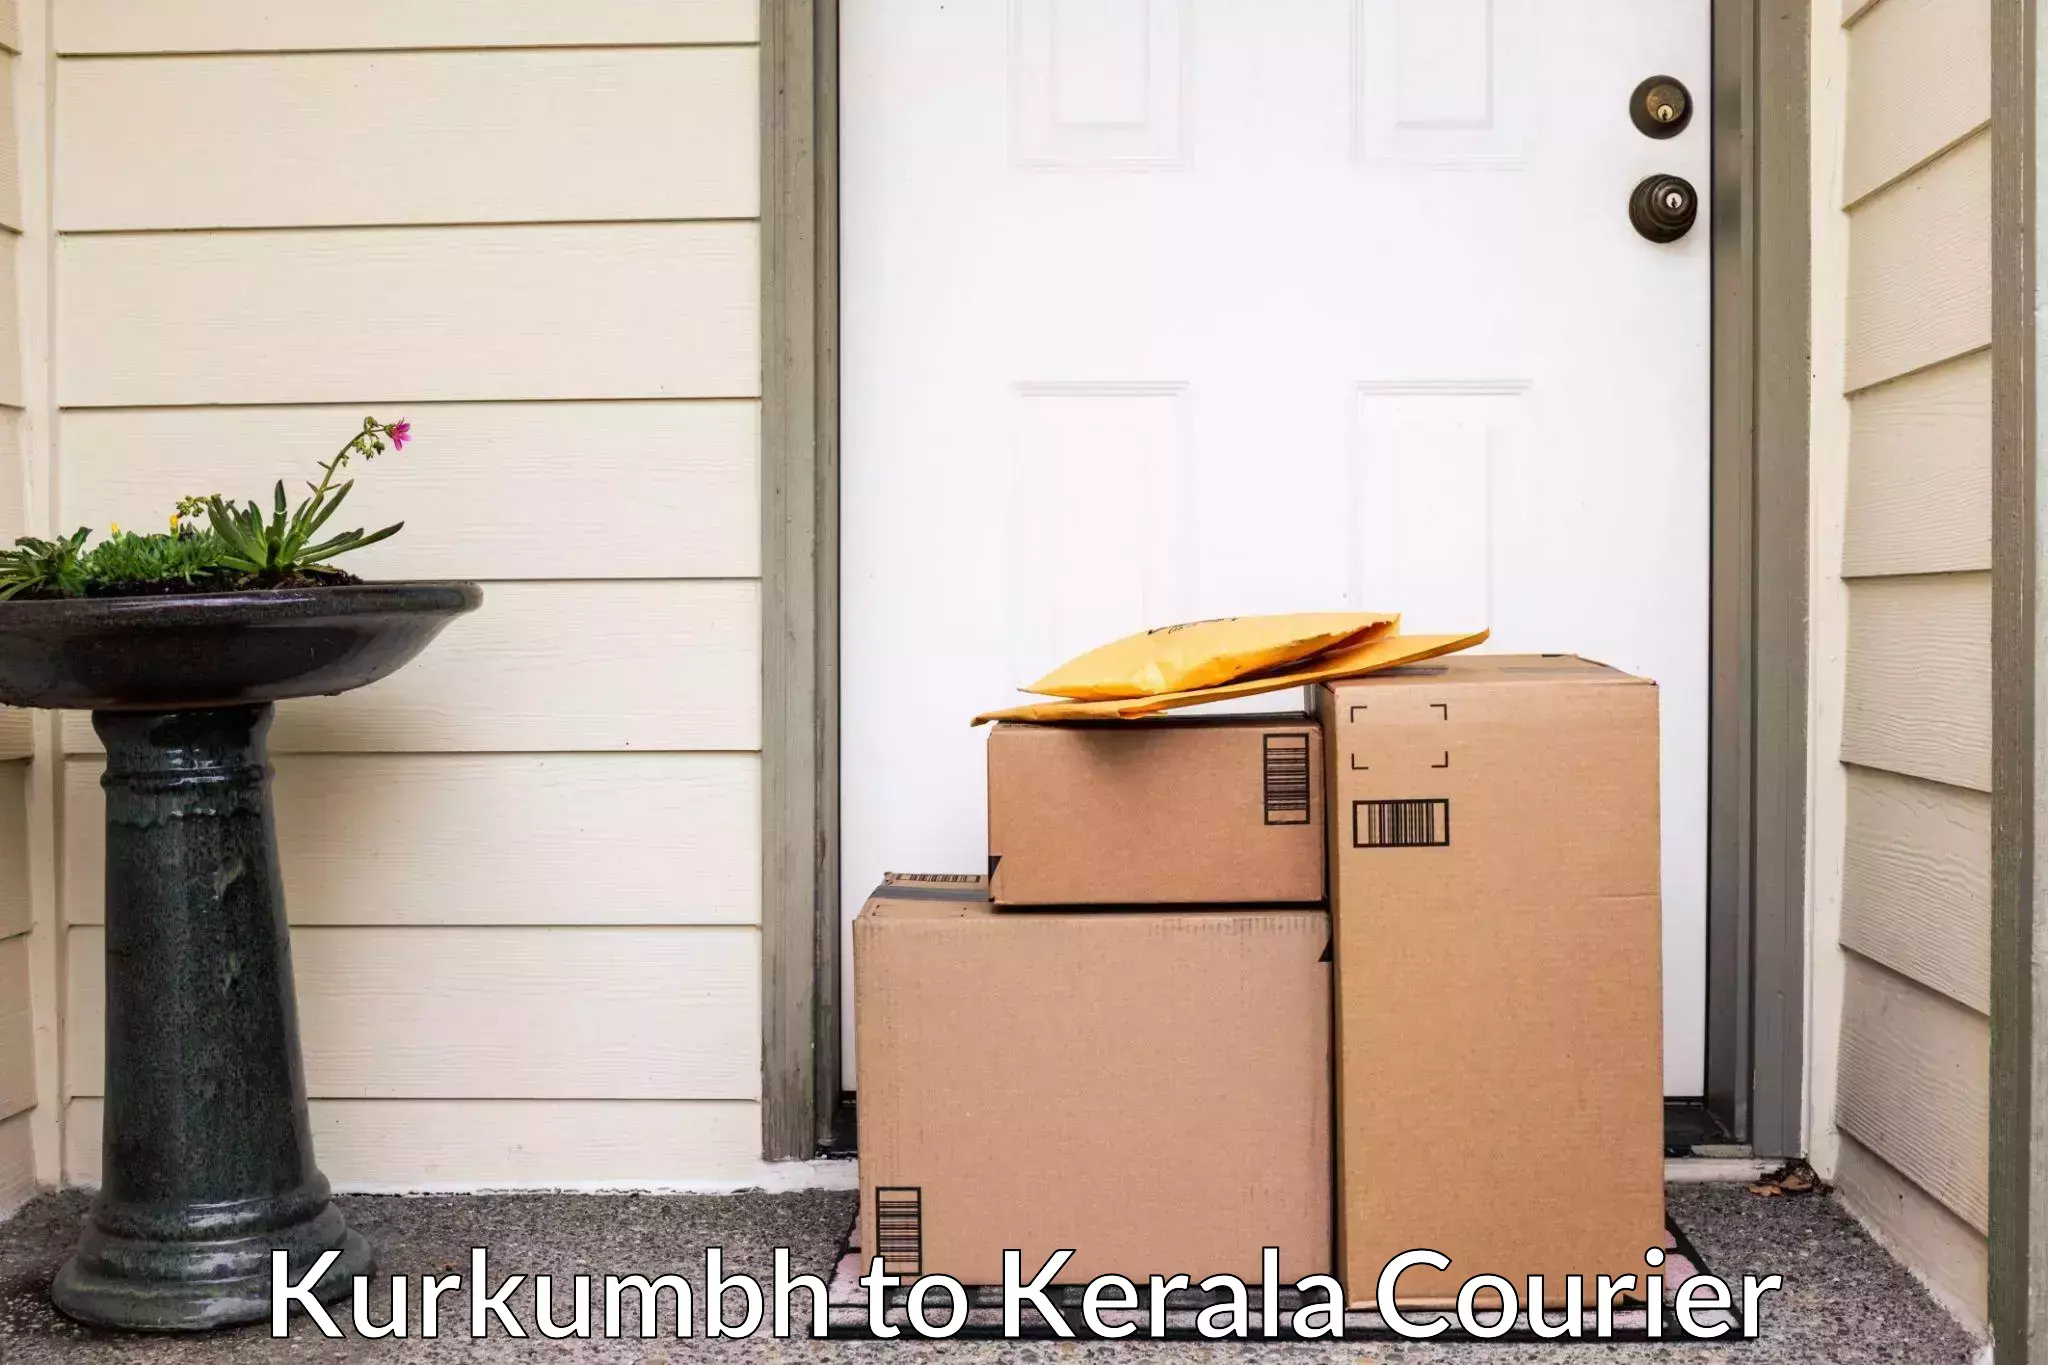 Reliable home moving Kurkumbh to Kerala